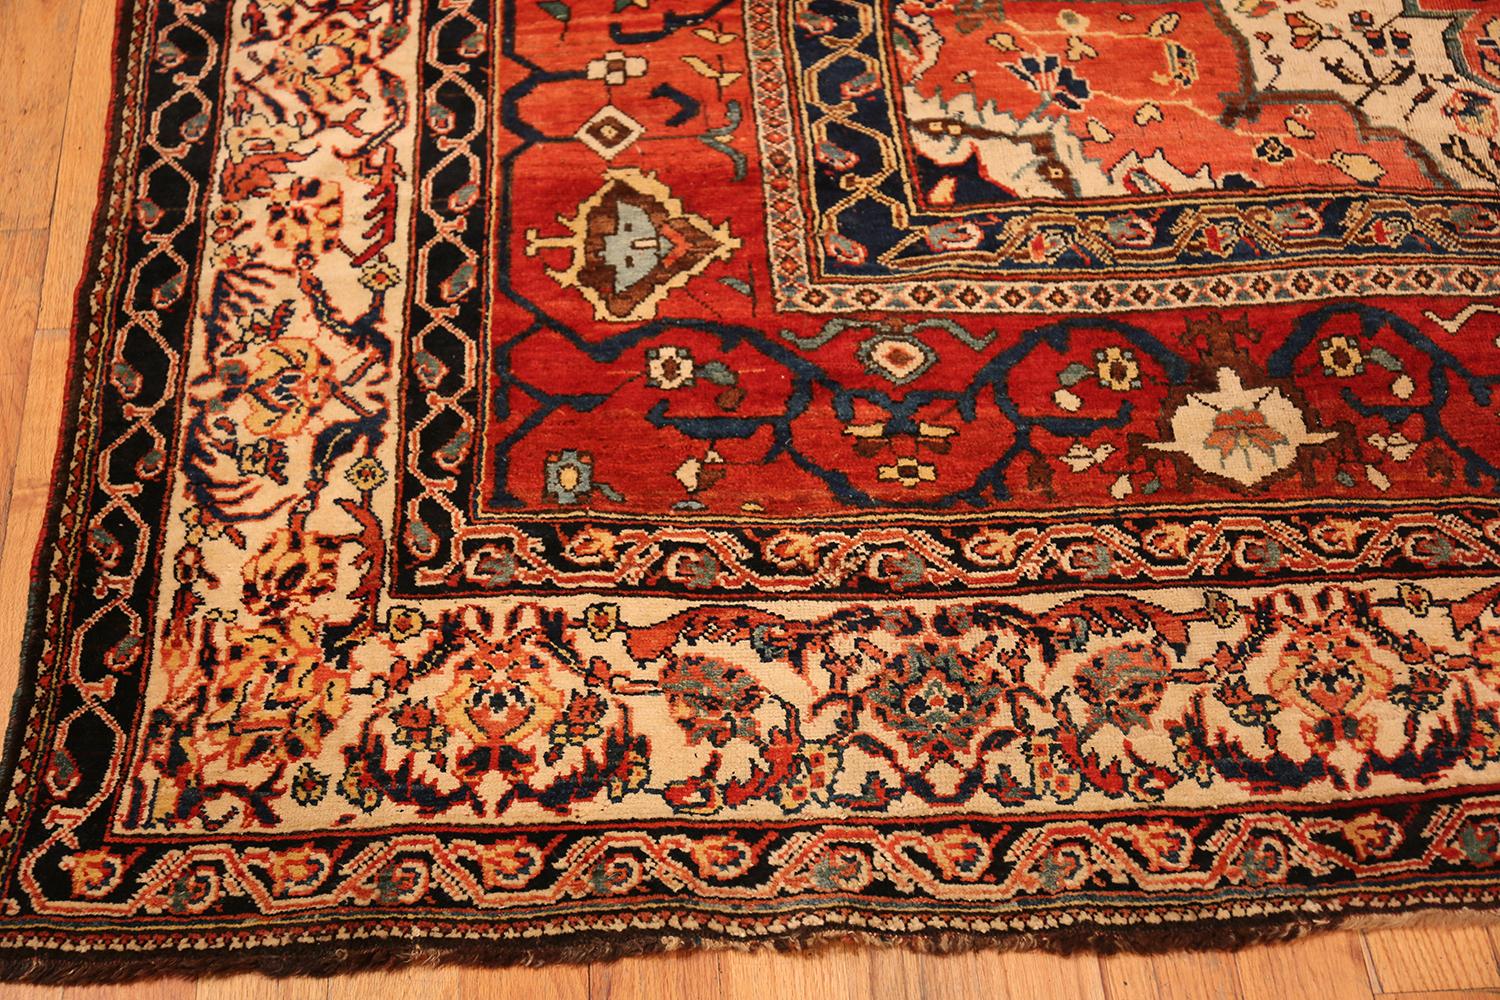 Antique Persian Bakhtiari Rug. Size: 11 ft 8 in x 14 ft (3.56 m x 4.27 m) (Persisch)